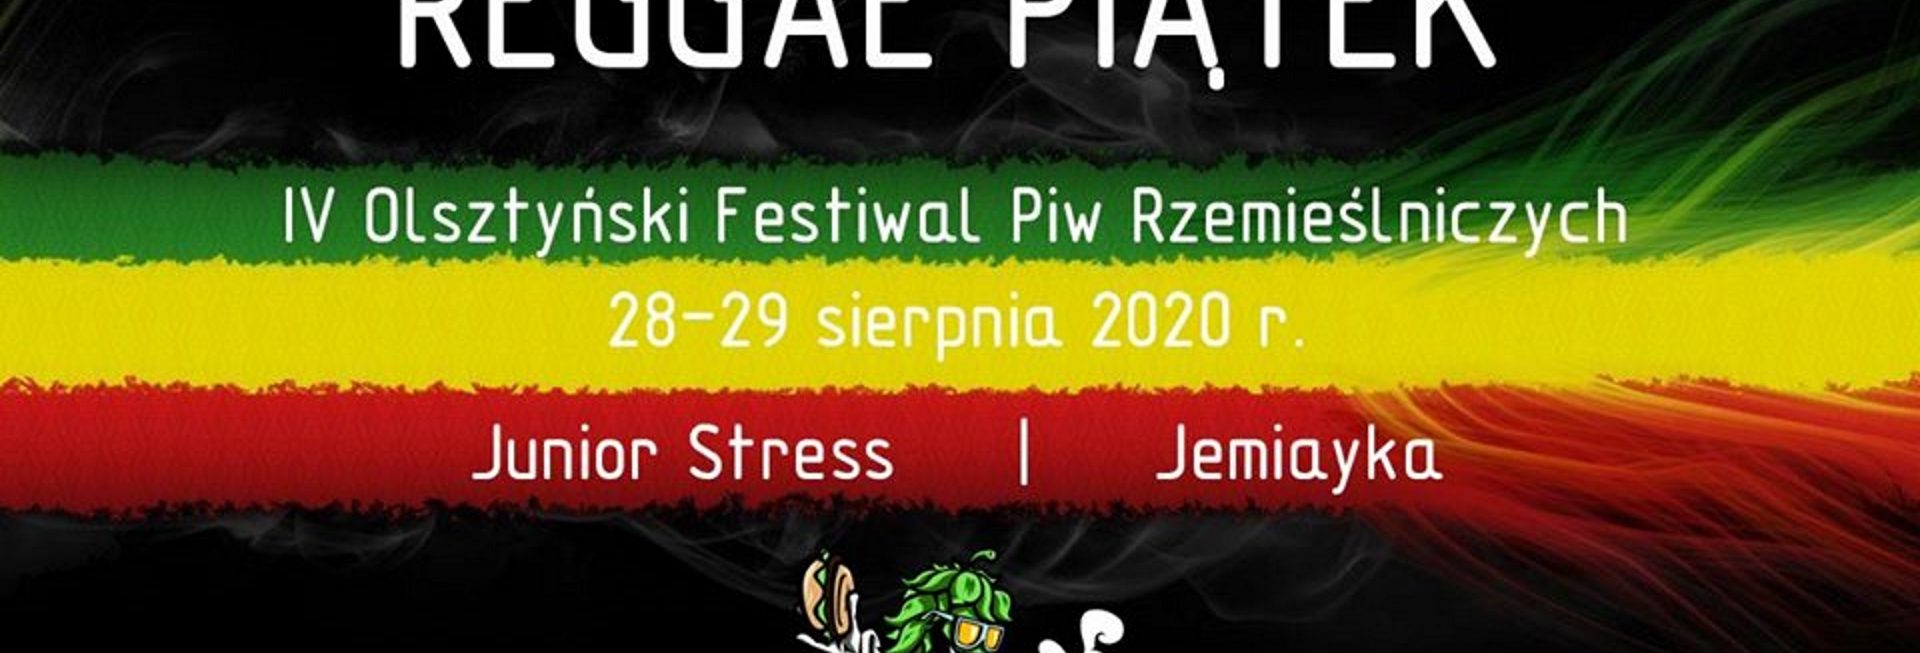 Plakat graficzny zapraszający do Olsztyna na Koncert Reggae Piątek z Junior Stress i Jemiayka - Olsztyn 2020. Plakat posiada czarne tło. Po środku plakatu kolory o barwach flagi jamajskiej na których zamieszczone są napisy zapraszające na koncert.   